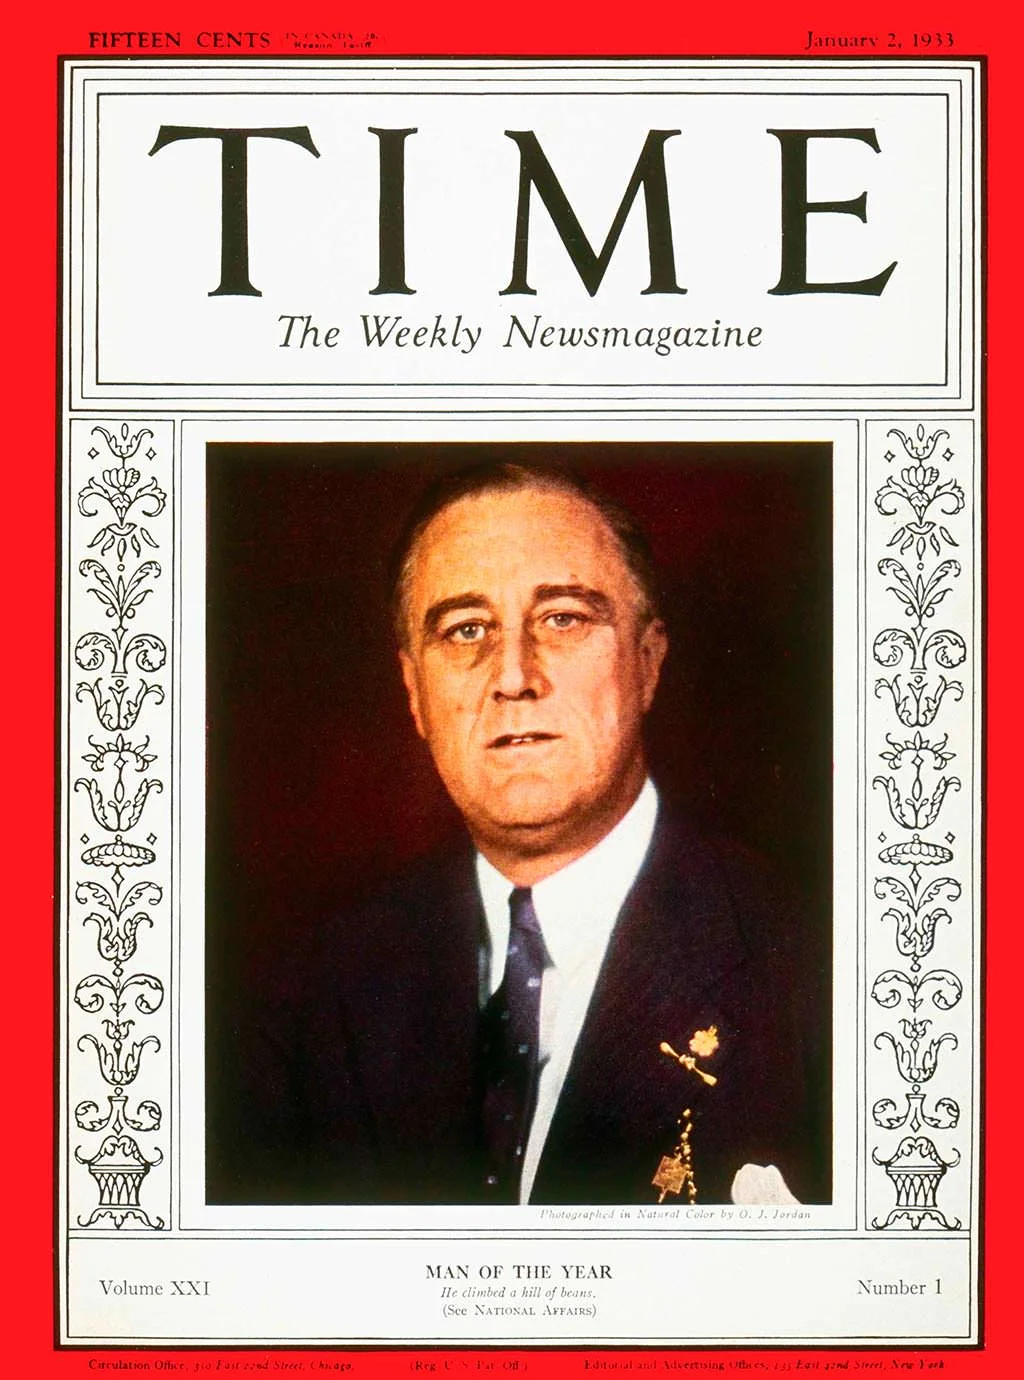 1932 год. Президент Франклин Рузвельт на обложке Time